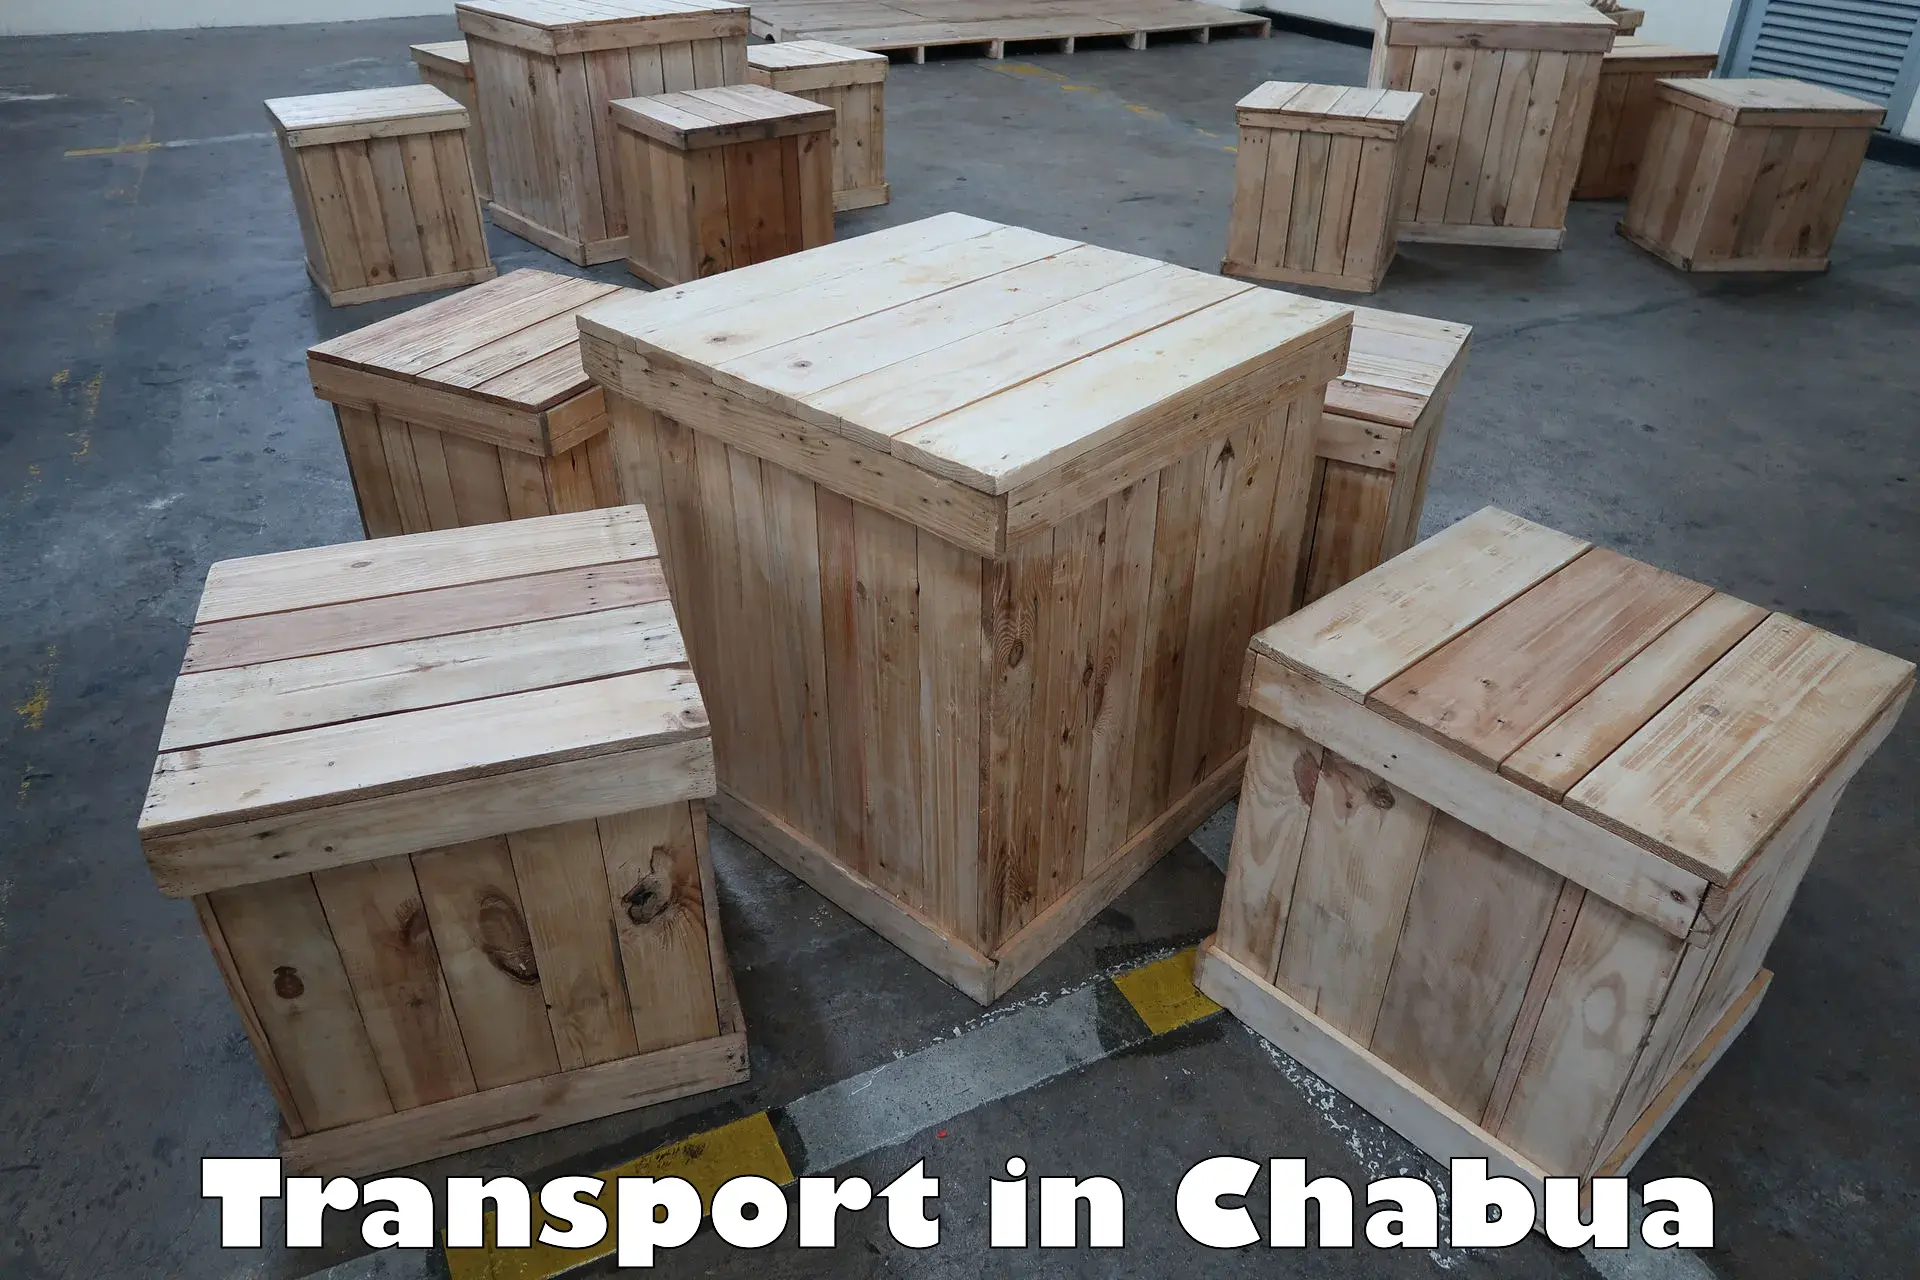 Furniture transport service in Chabua